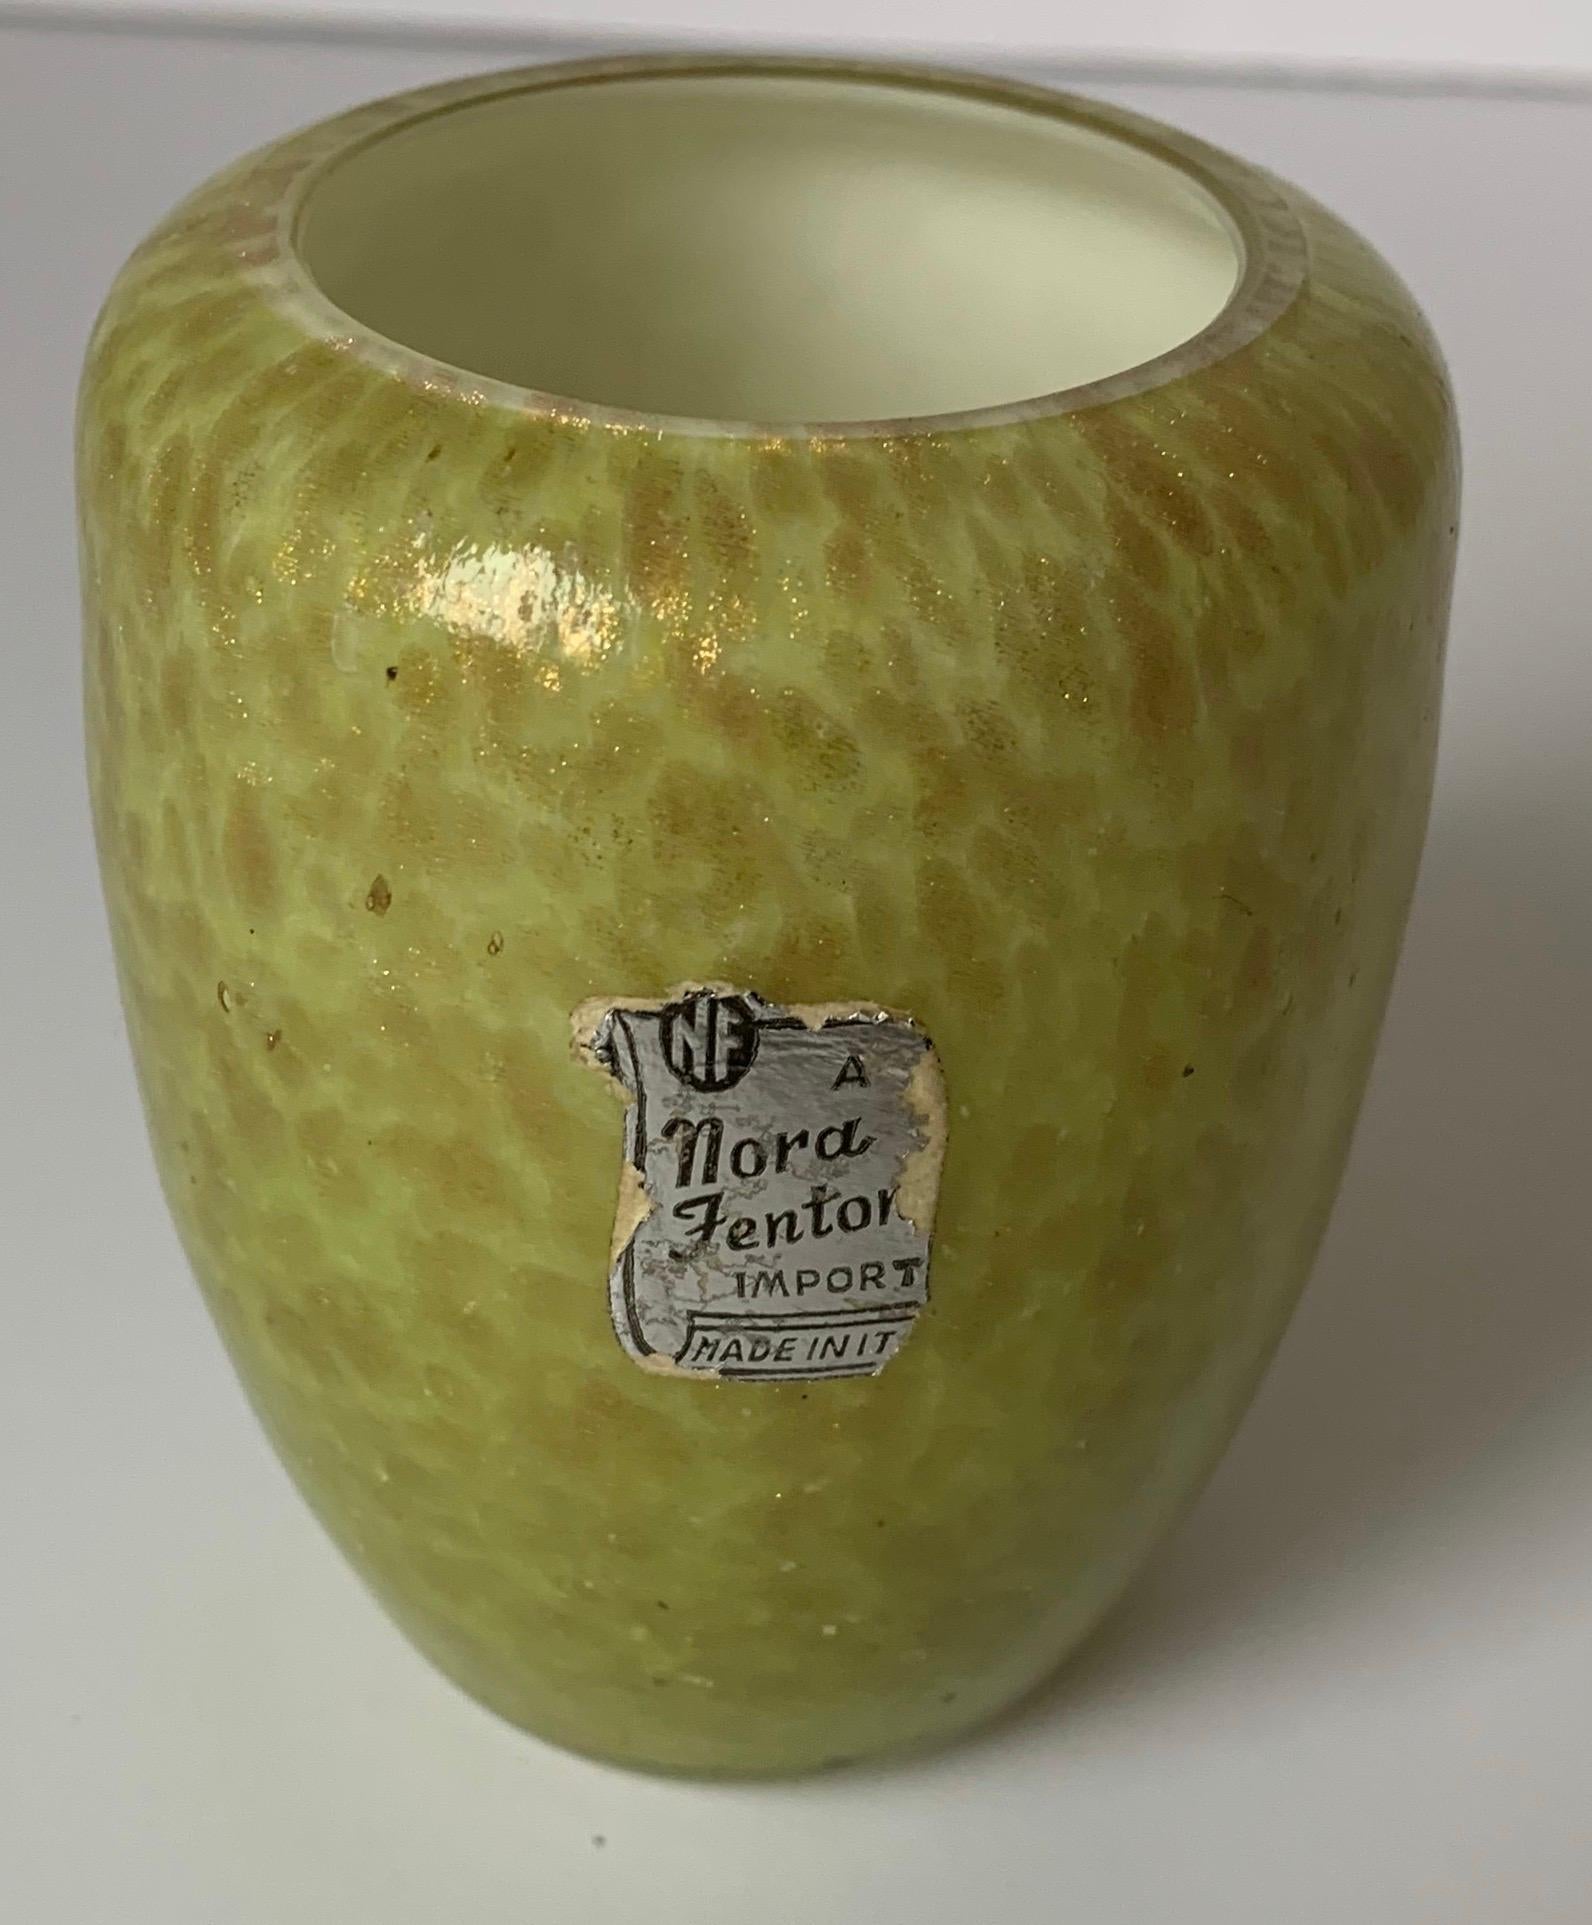 Vase à boutons en verre soufflé italien de Murano importé par Nora Fenton. Verre soufflé vert clair avec des mouchetures dorées. Le vase conserve son étiquette d'origine.